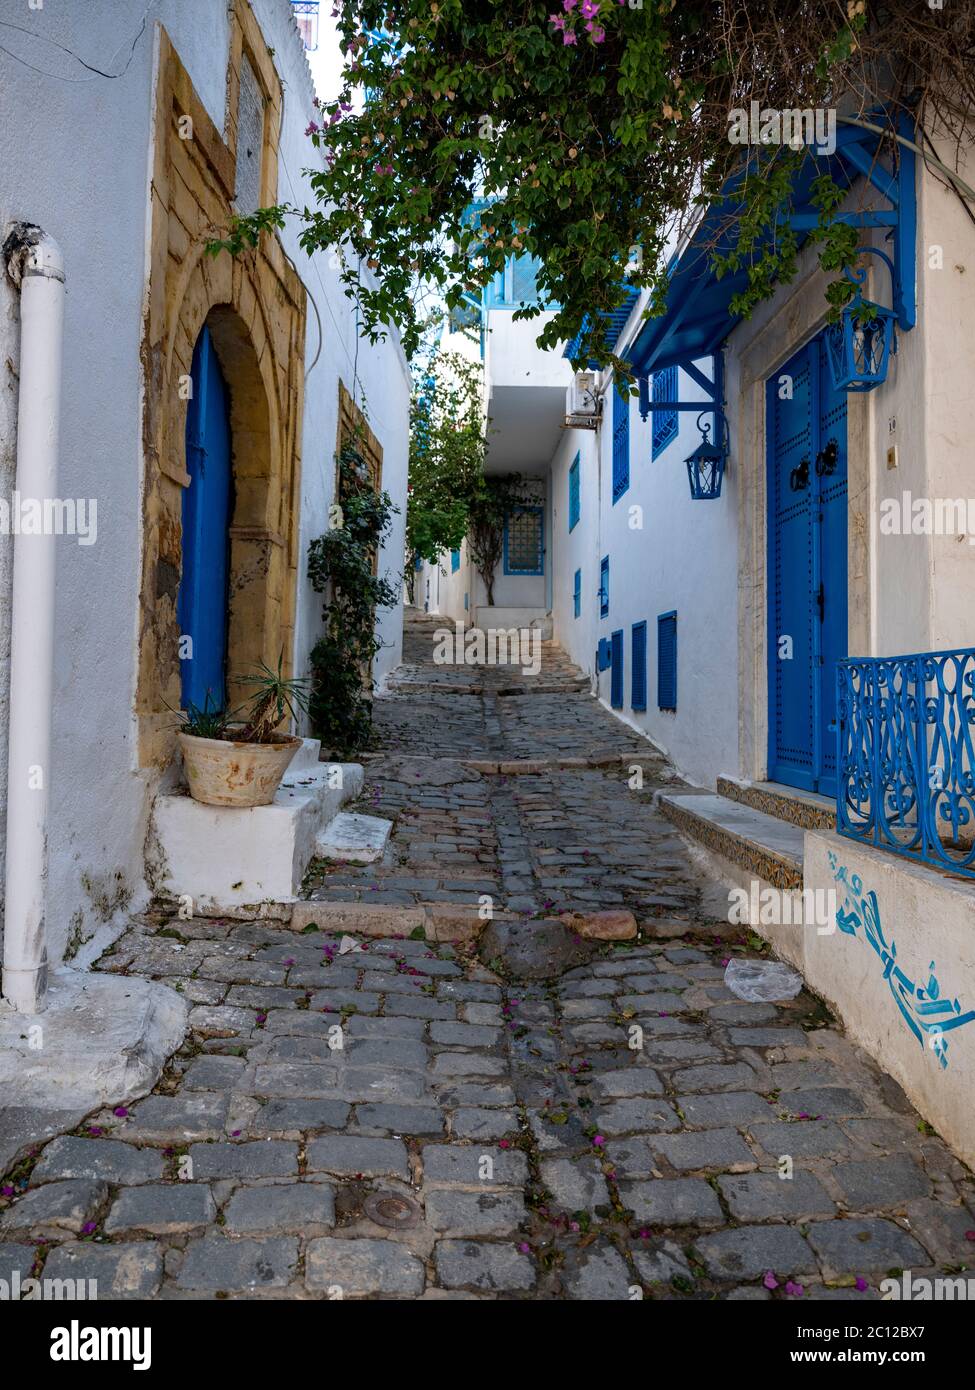 Scène de rue dans le village de Sidi bou Said, Tunisie, connue pour son utilisation traditionnelle des couleurs bleu et blanc sur les façades des bâtiments. Banque D'Images